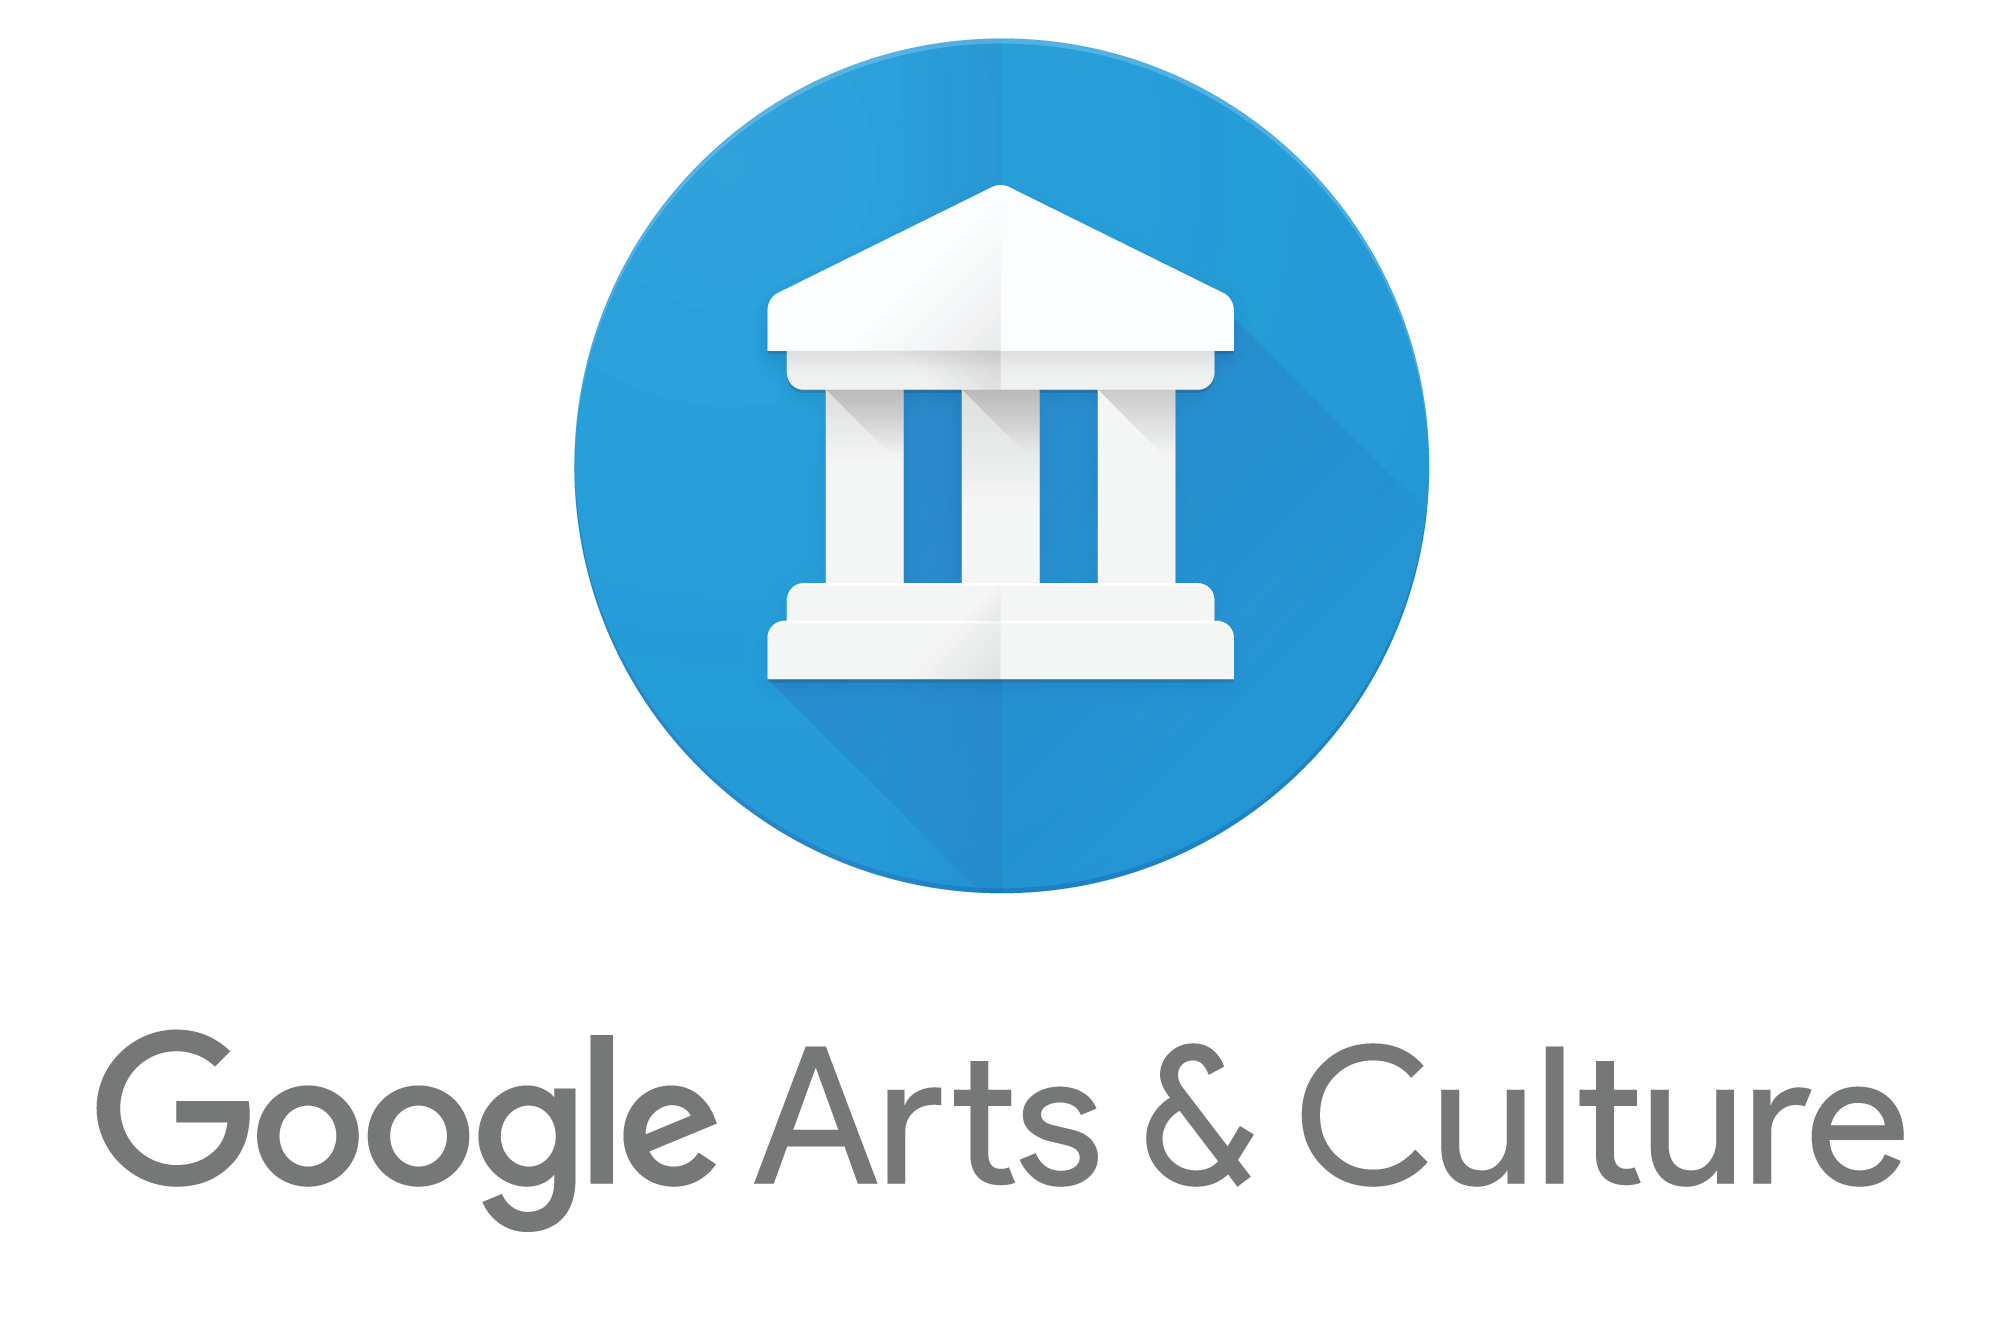 Google art, culture, app, tools